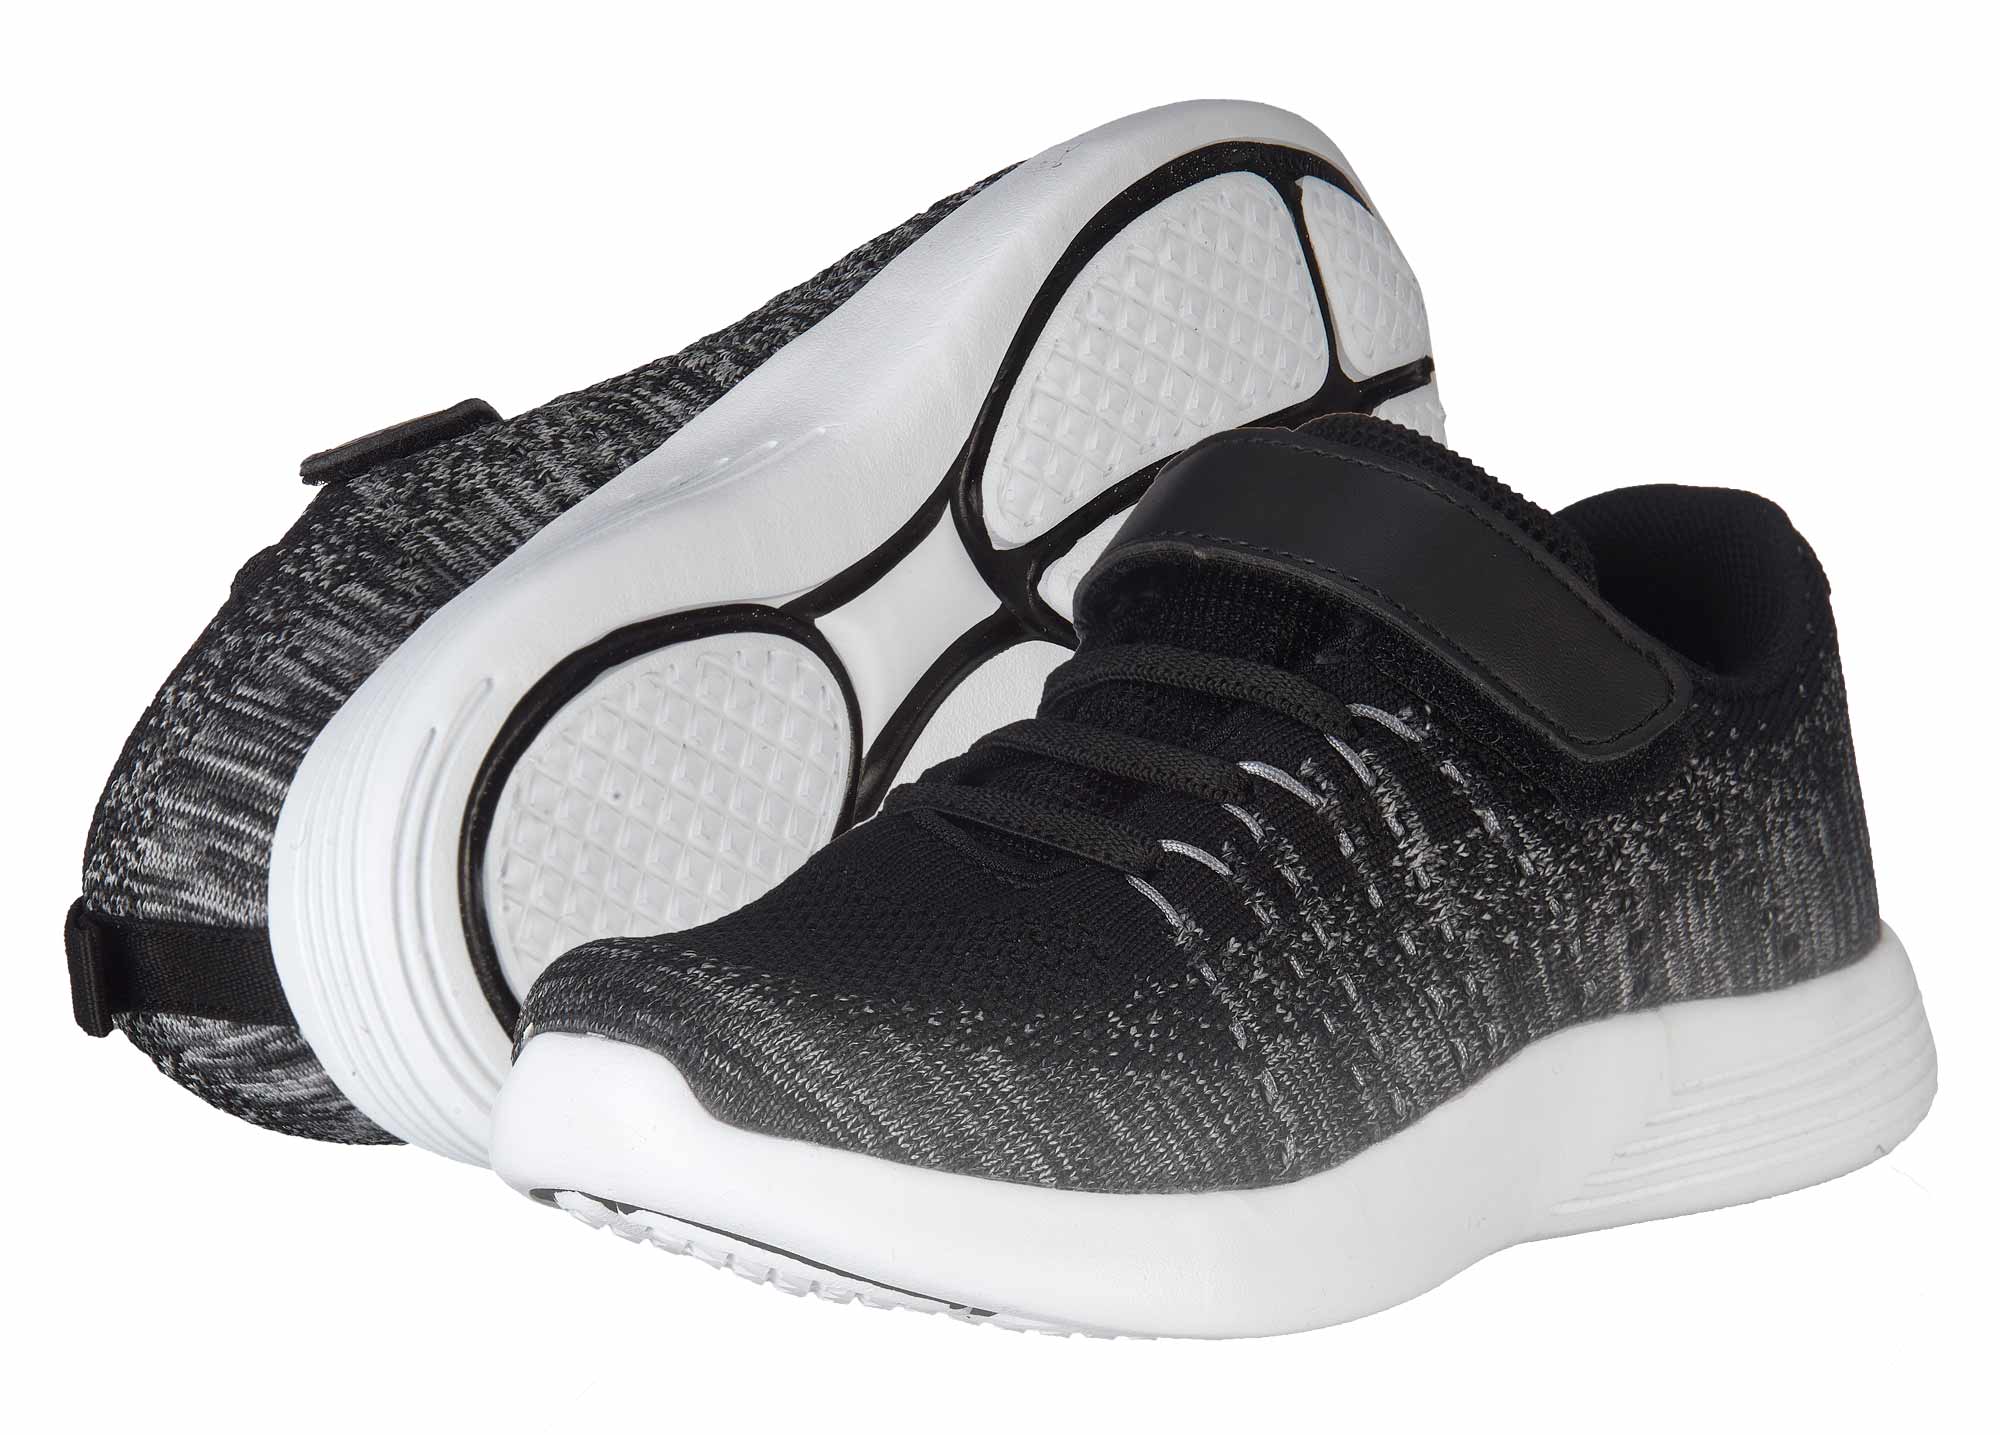 BALLOP Sneaker Kids Mix black/grey